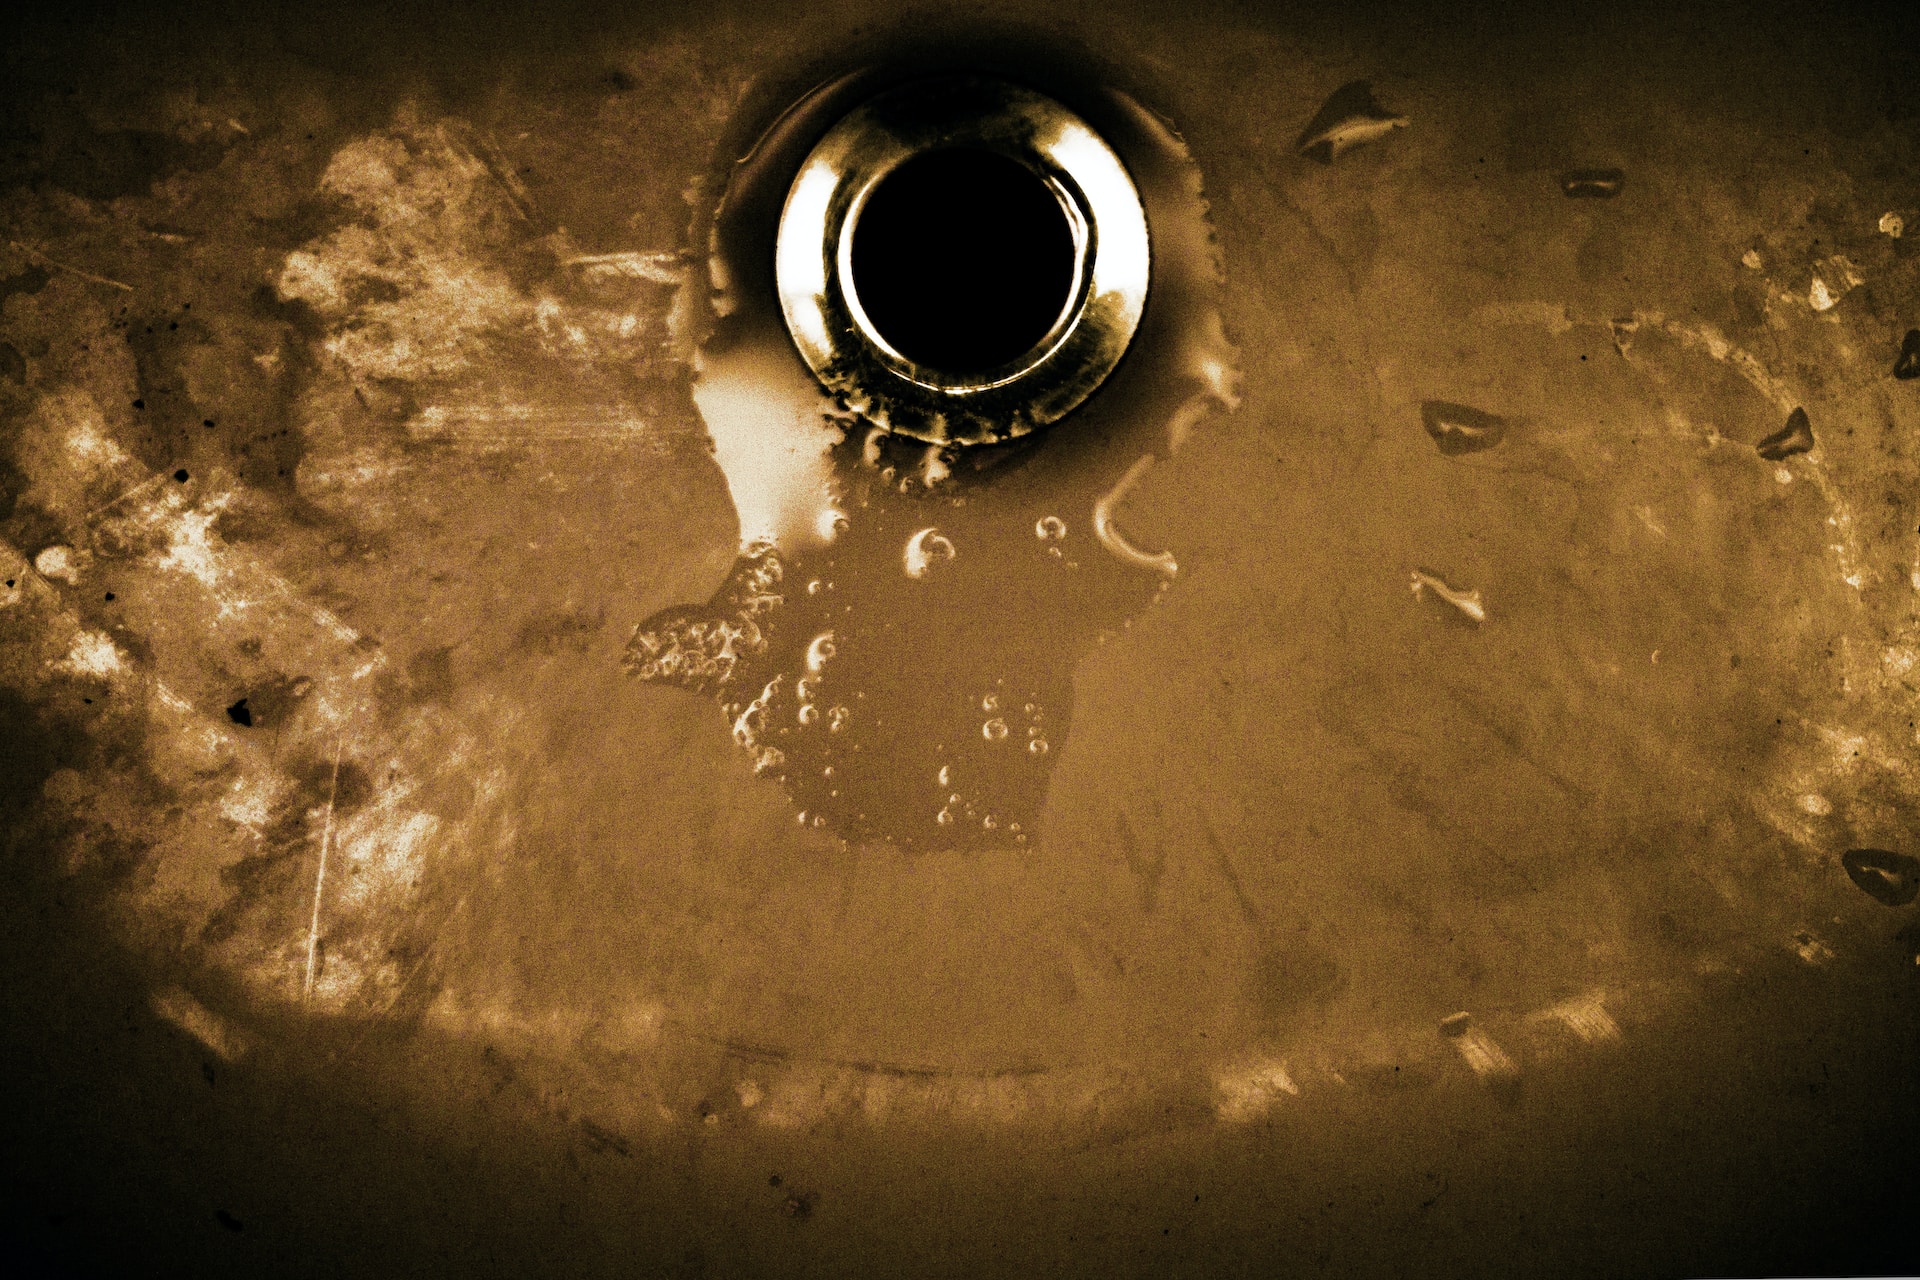 An empty kitchen sink